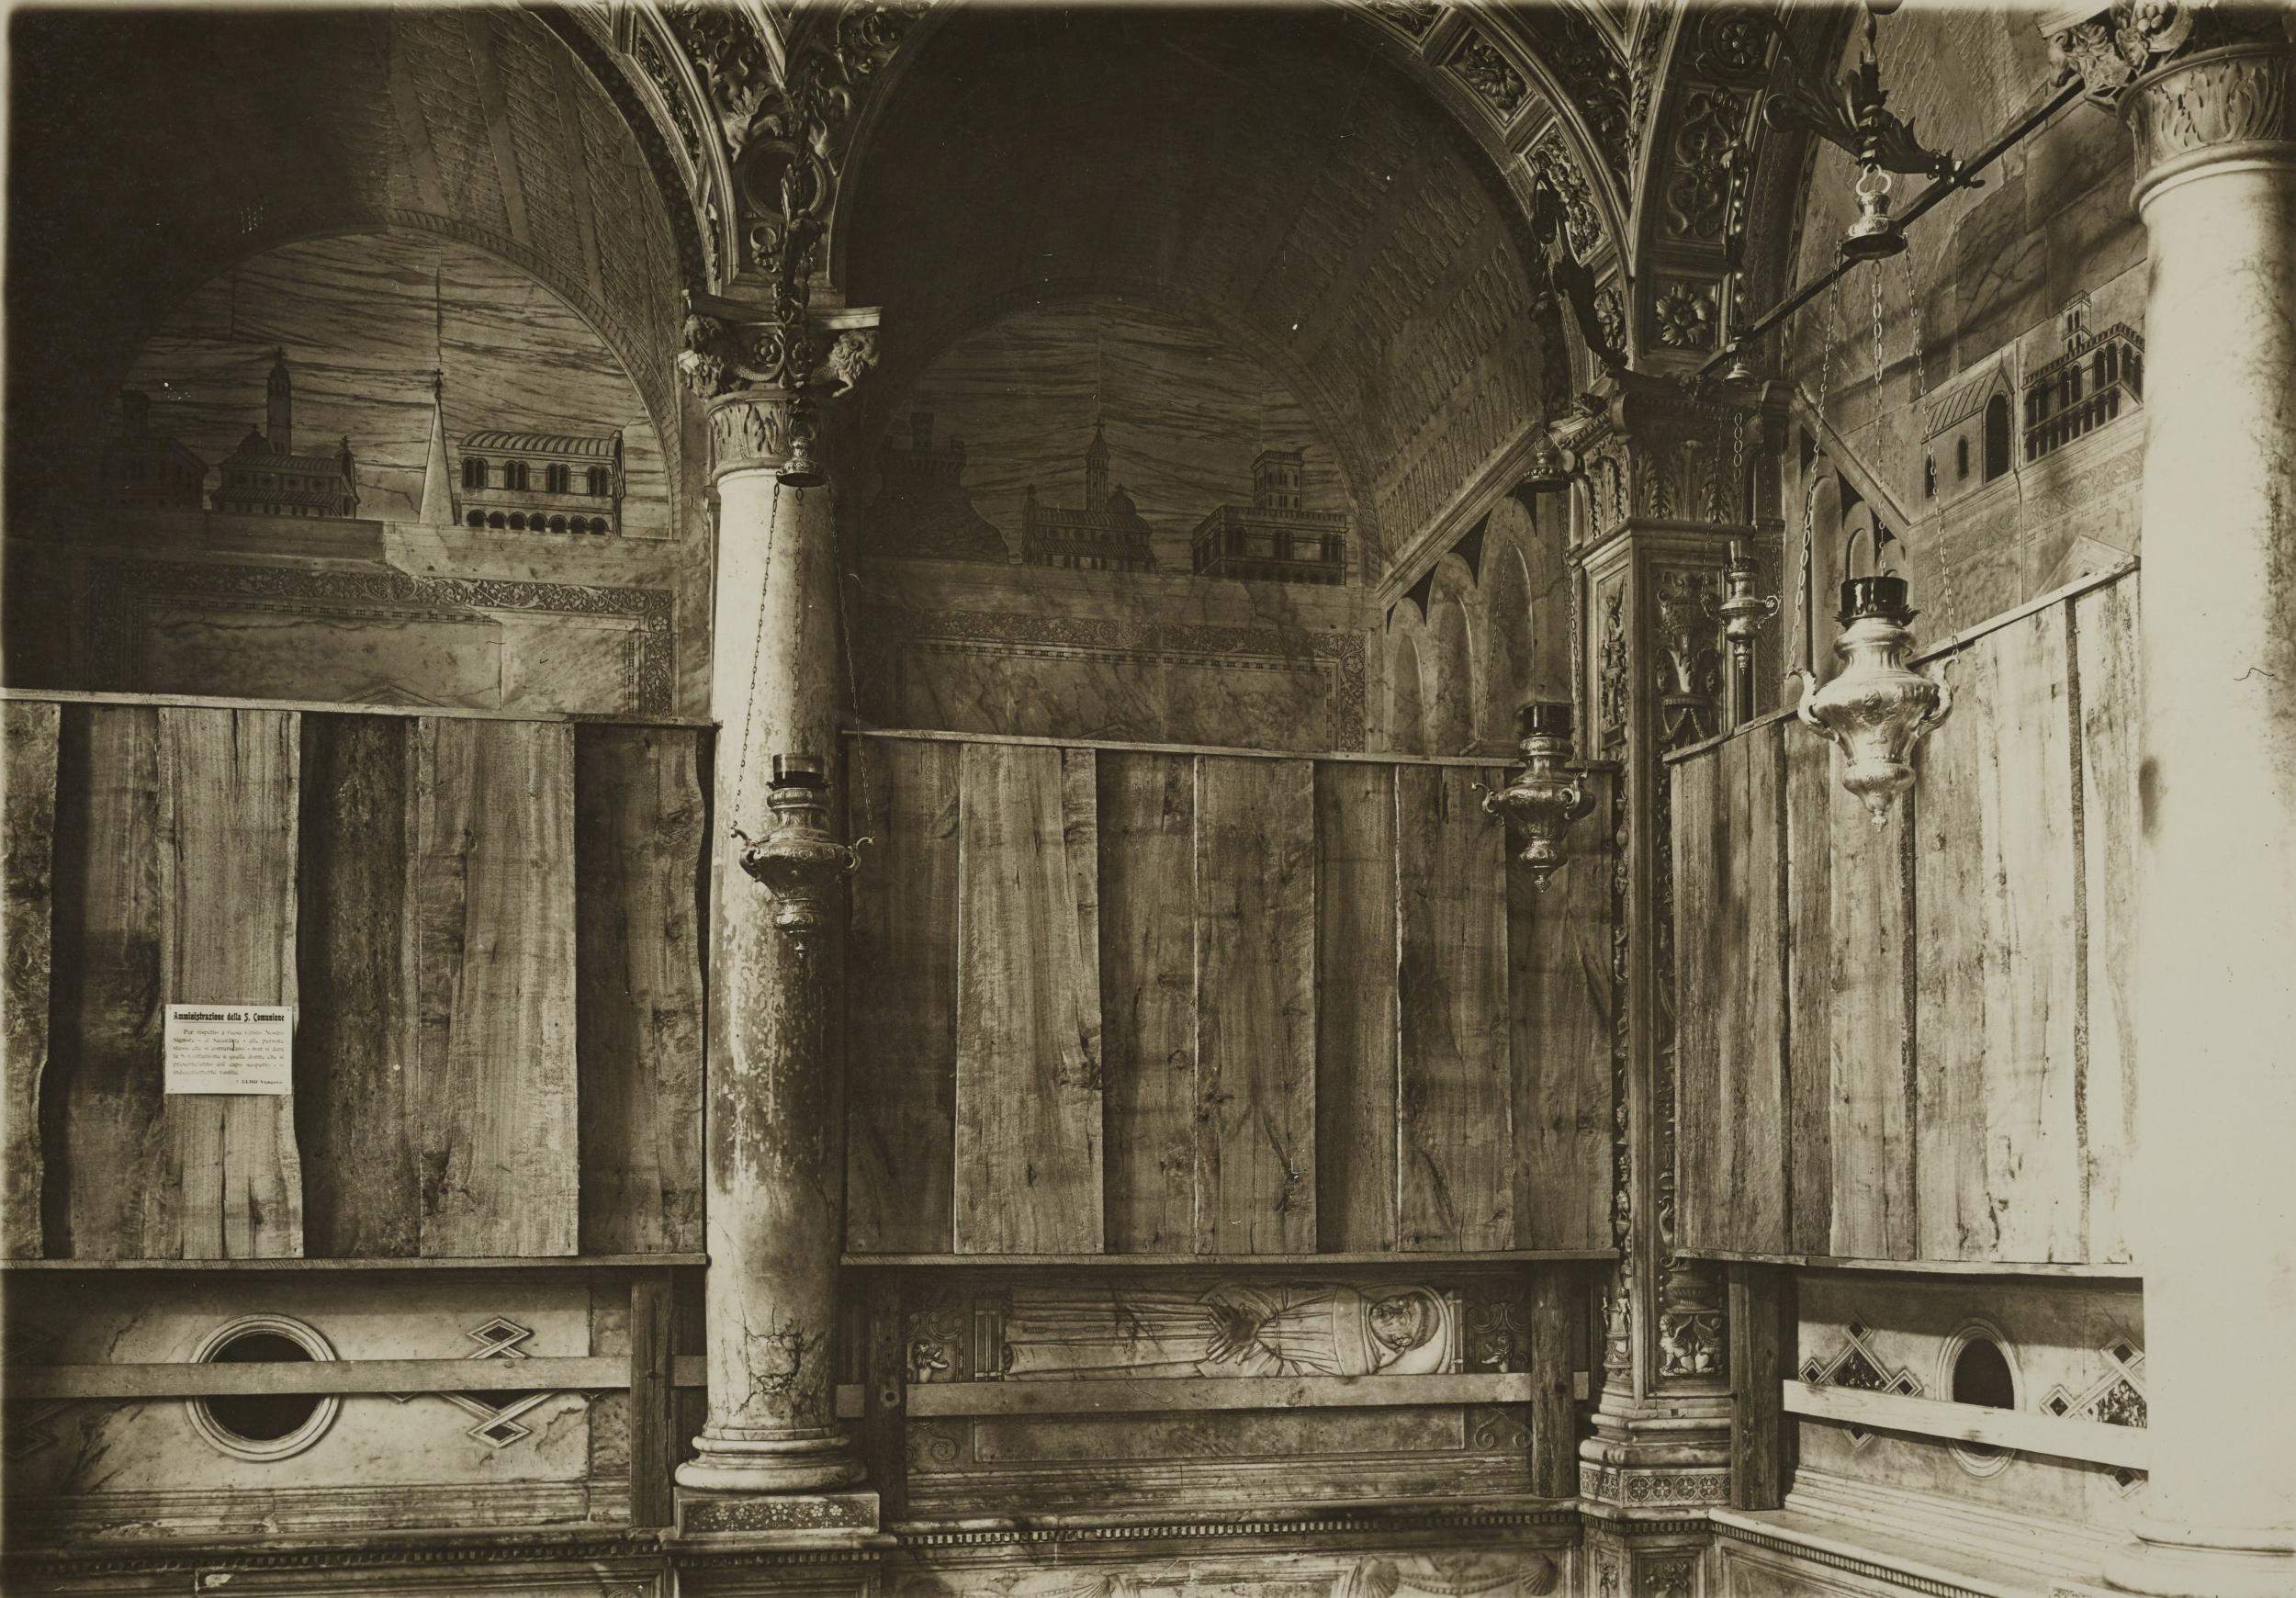 Fotografo non identificato, Padova - Basilica di S. Antonio di Padova, arca santa, 1915/1918, gelatina ai sali d'argento, 12,2x17 cm, MPI311012